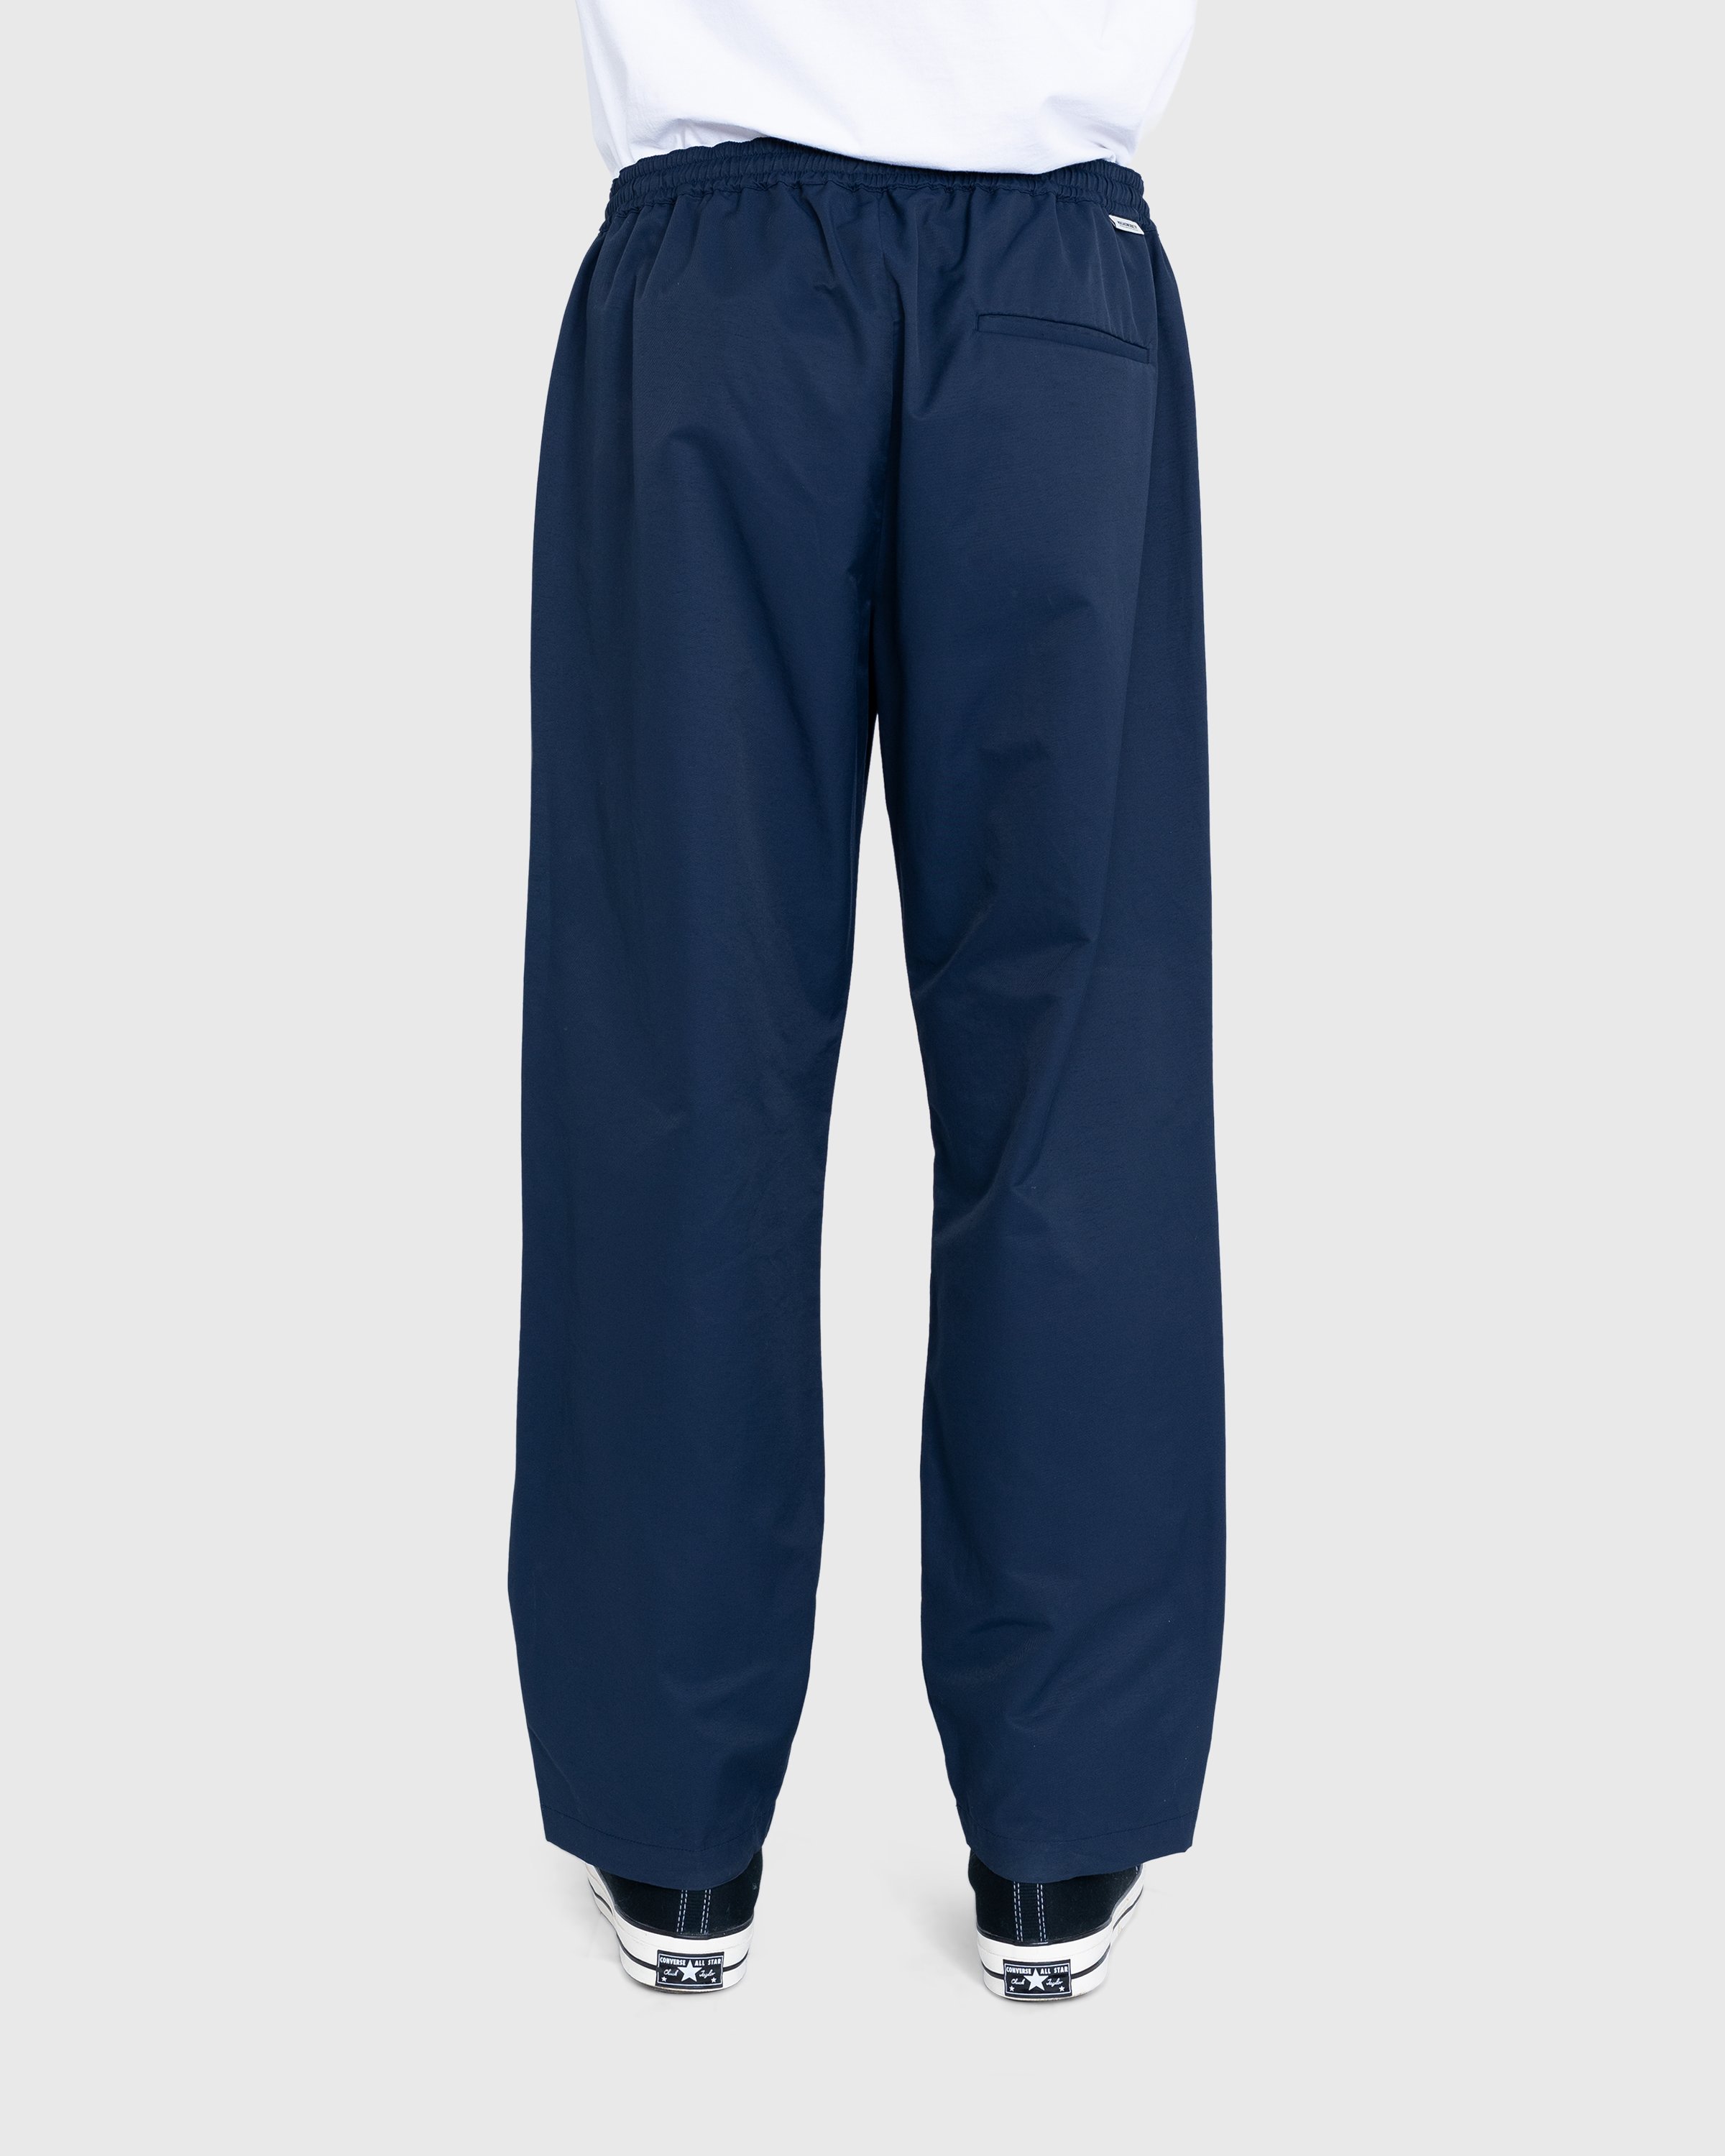 Highsnobiety - Cotton Nylon Elastic Pants Navy - Clothing - Blue - Image 4